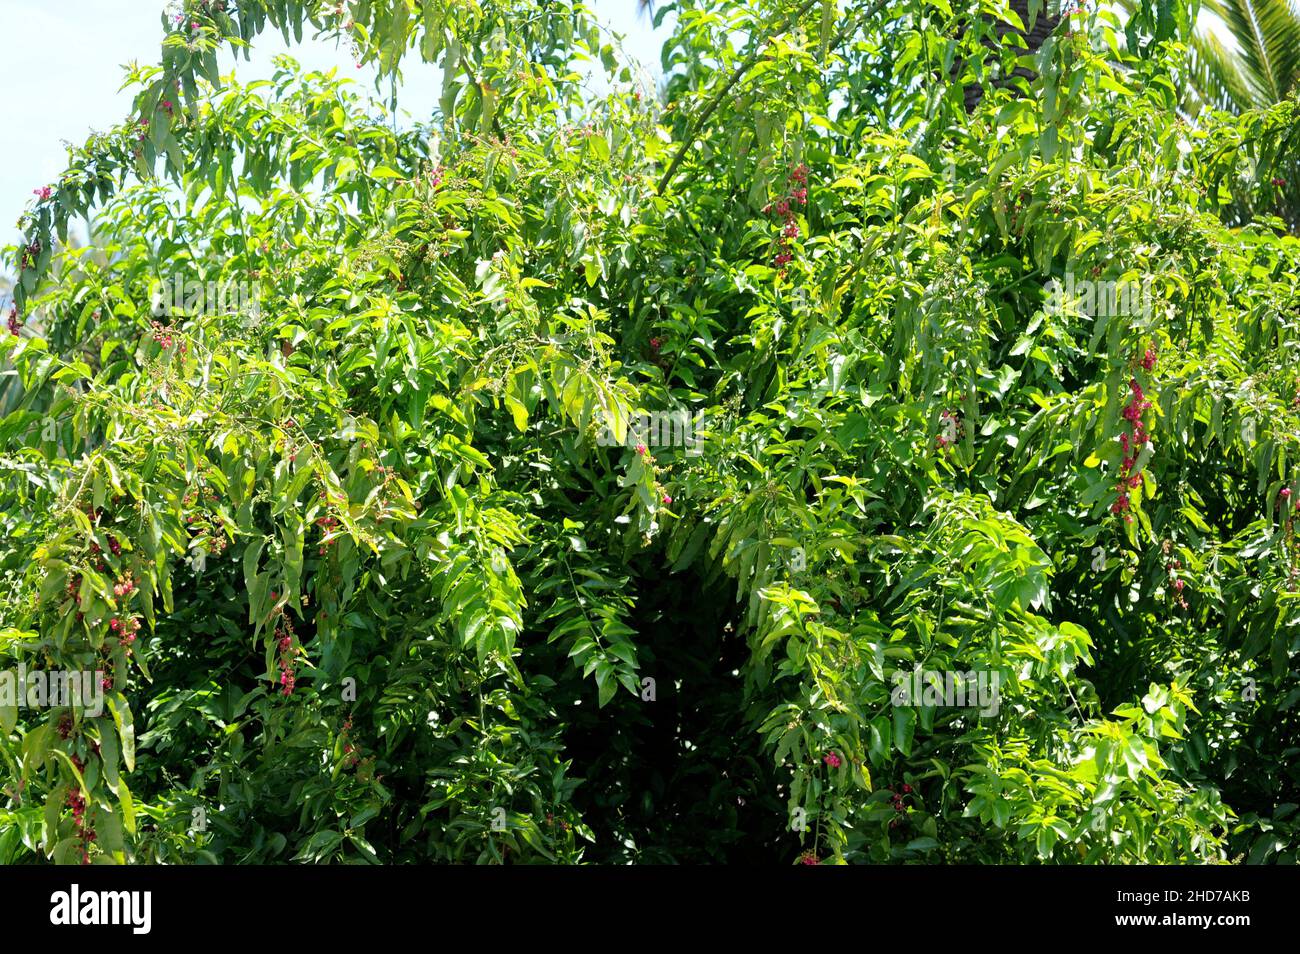 Hierbamora o hediondo (Bosea yervamora) es un arbusto medicinal endémico de las Islas Canarias. Foto de stock